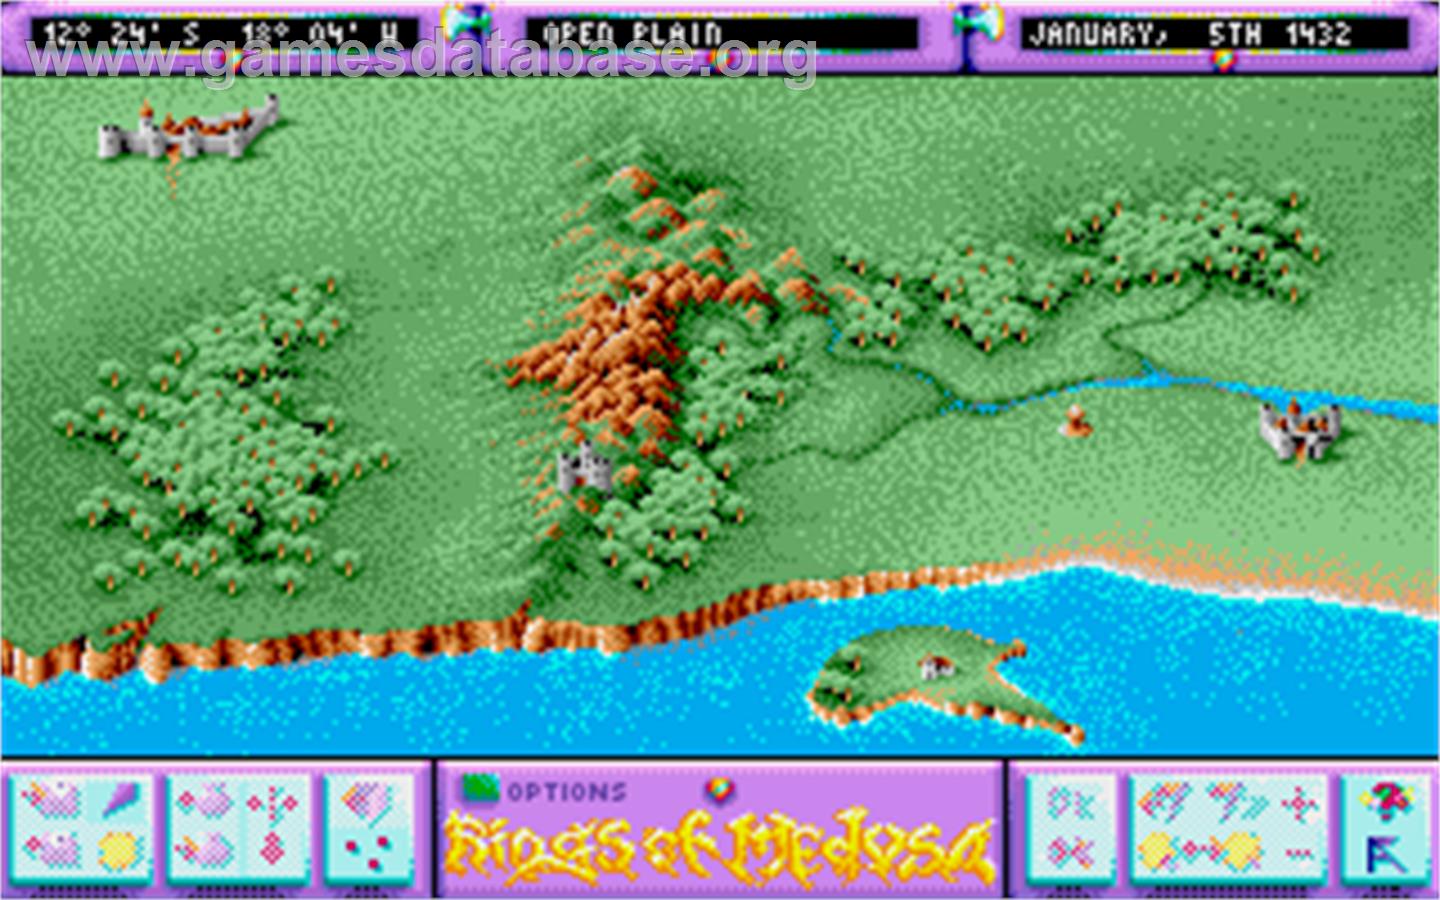 Rings of Medusa - Atari ST - Artwork - In Game